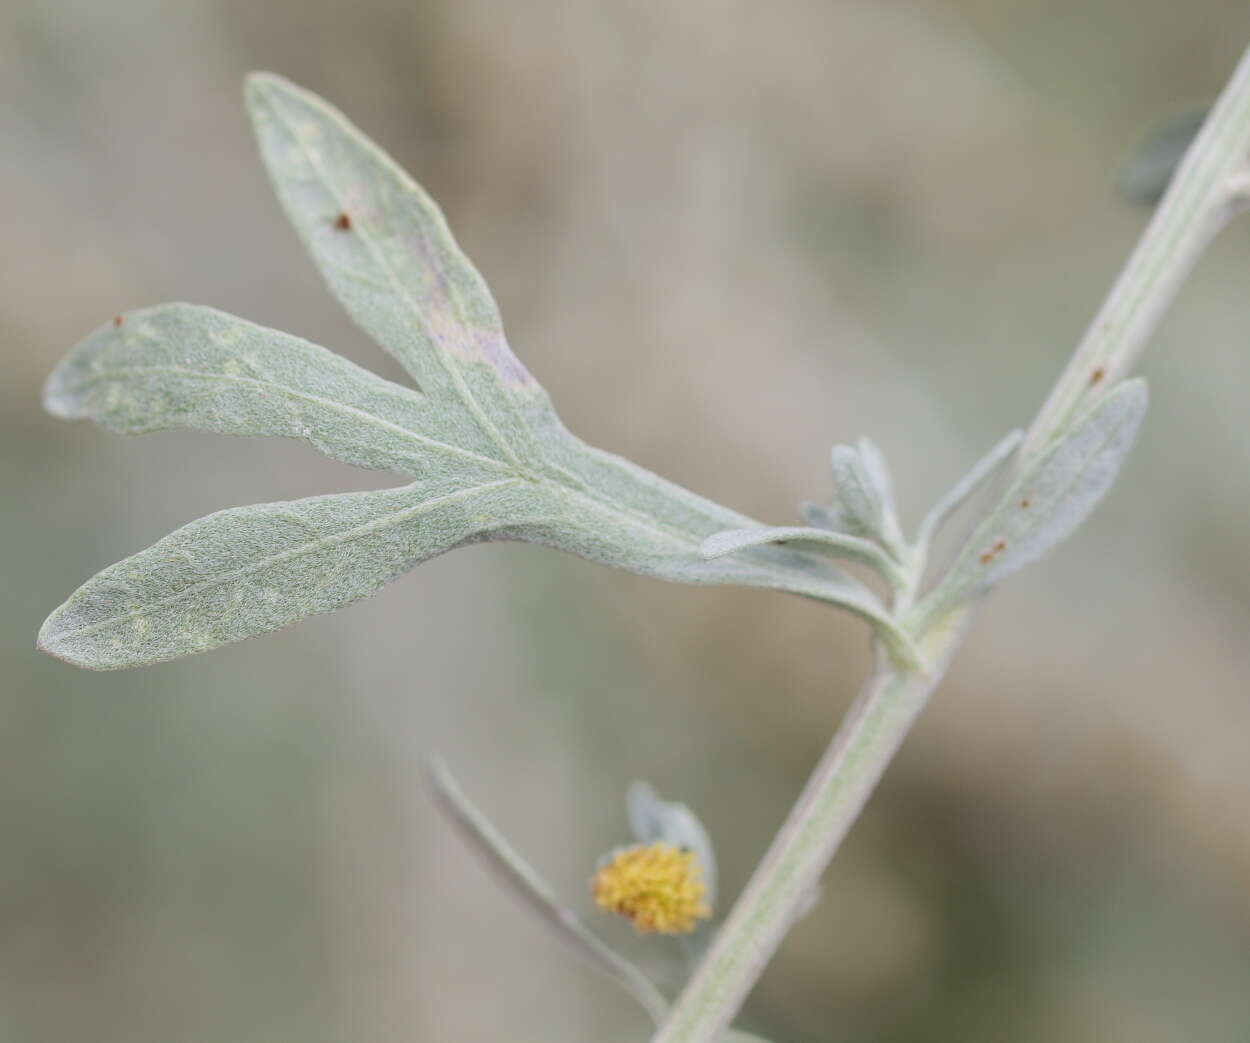 Image of Artemisia austriaca Jacq.